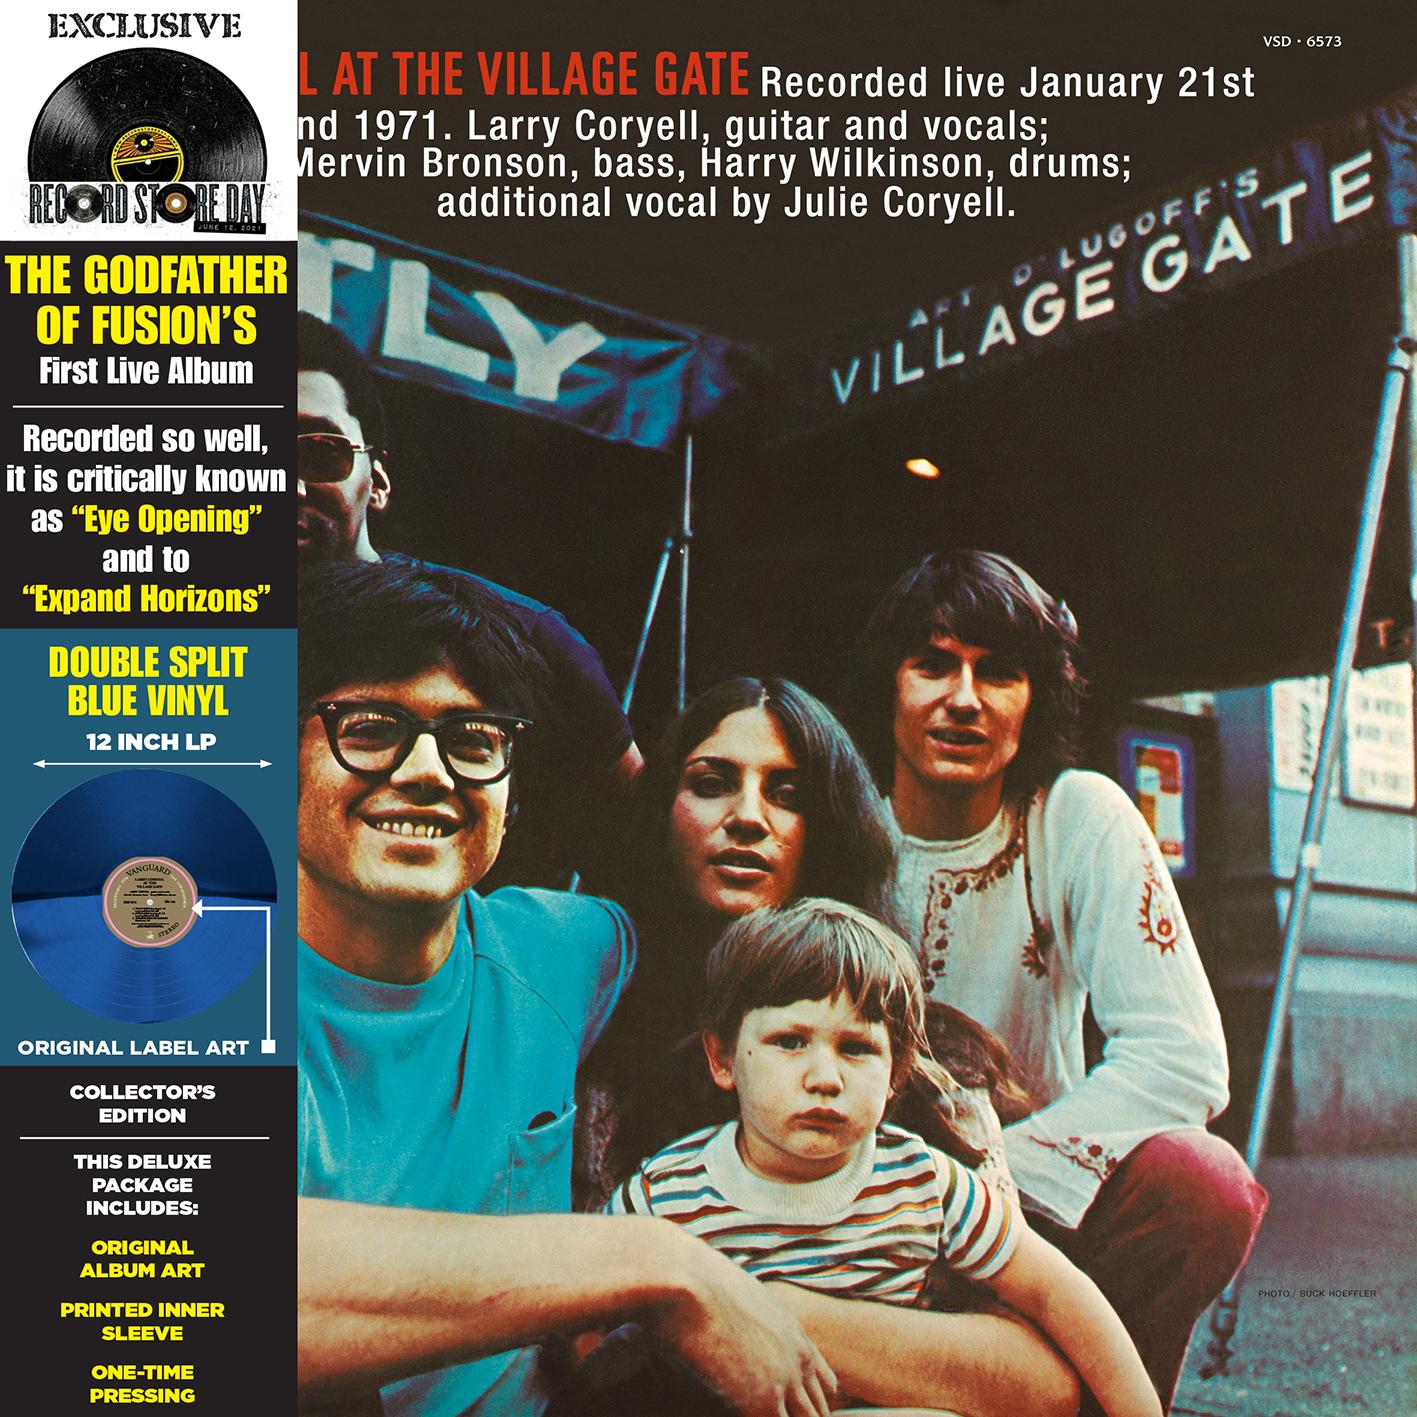 AT THE VILLAGE GATE - LP LIMITED DOUBLE SPLIT BLUE VINYL